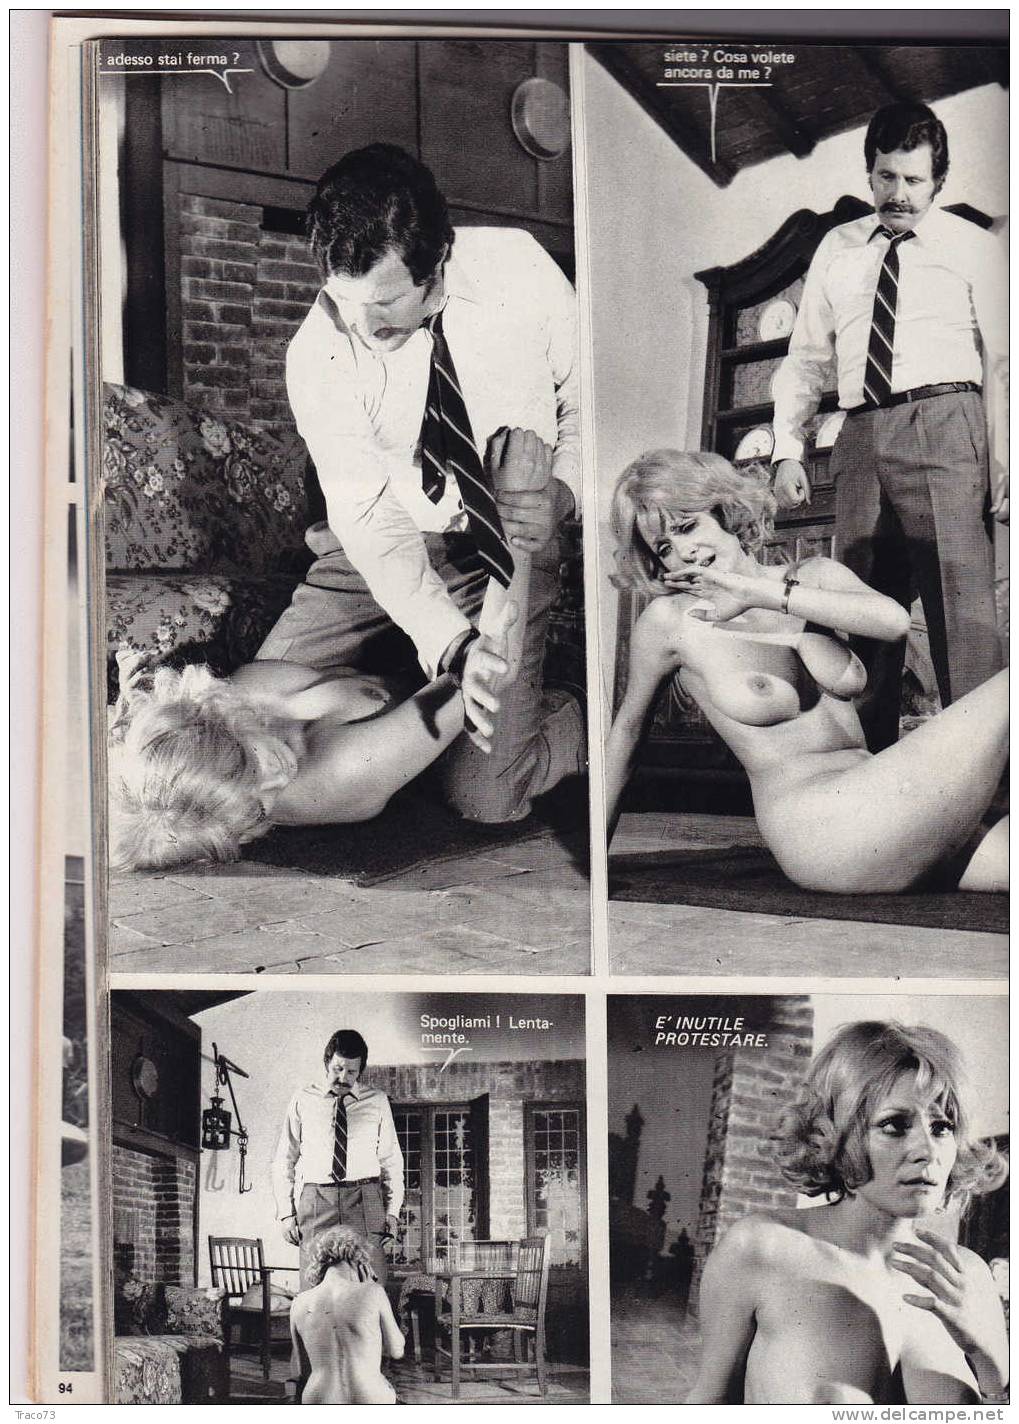 CULT  EPOCA  /  DUE FILM 1971 (N.1) - Numero doppio di 200 pagine - Spettacolare